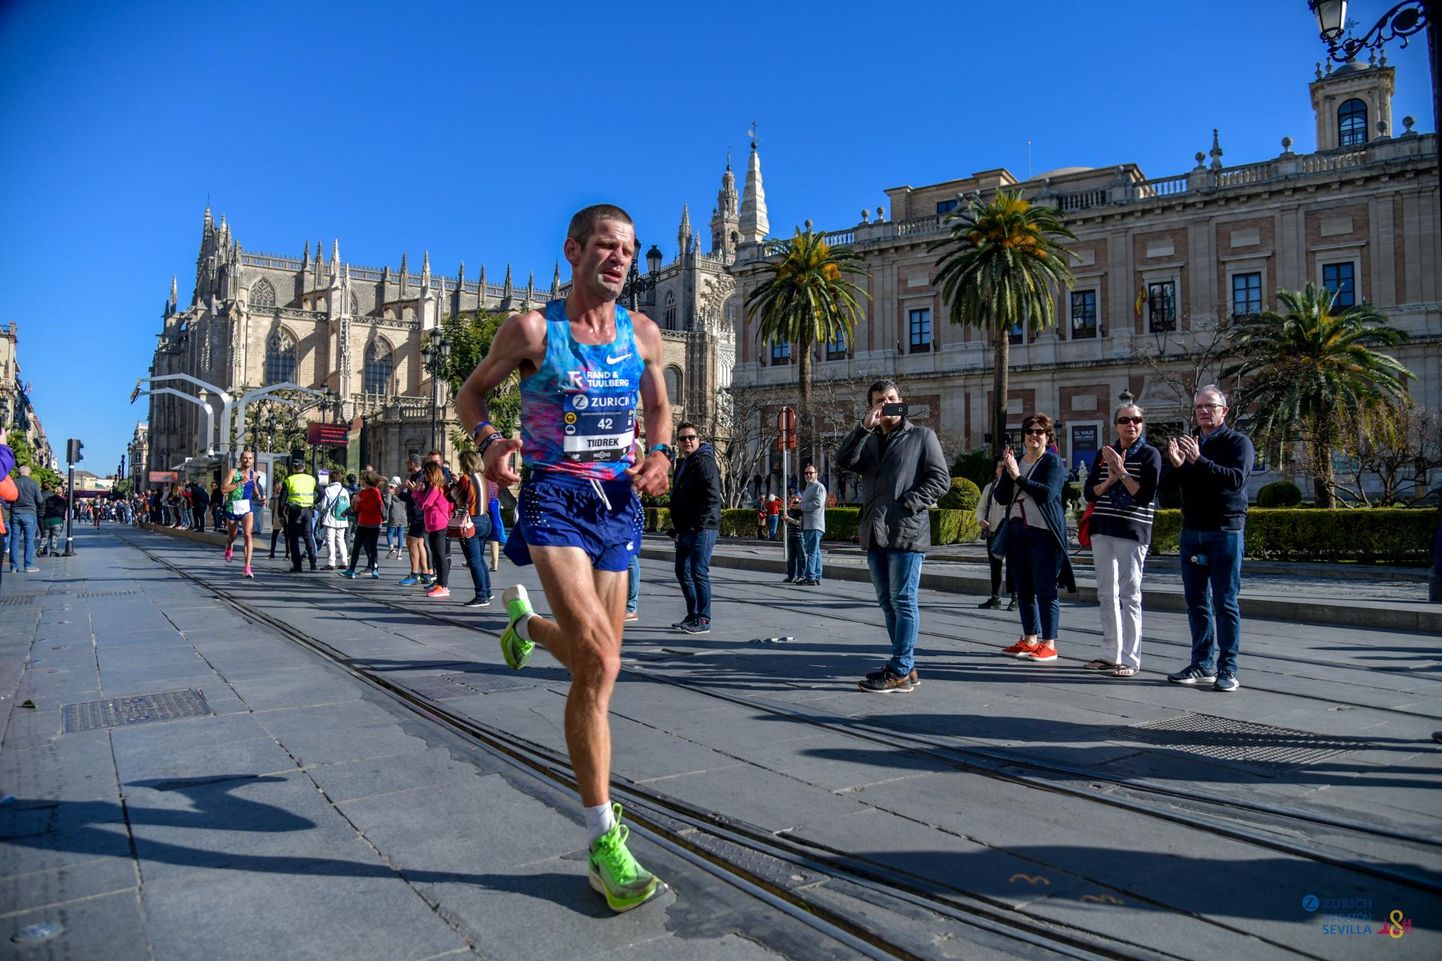 Tiidrek Nurme jooksmas möödunud pühapäeval Hispaanias Sevilla maratonil isiklikku rekordit. Jäänud on viimased kaks kilomeetrit. Taustal Sevilla katedraal, Euroopa suurim gooti stiilis kirik.